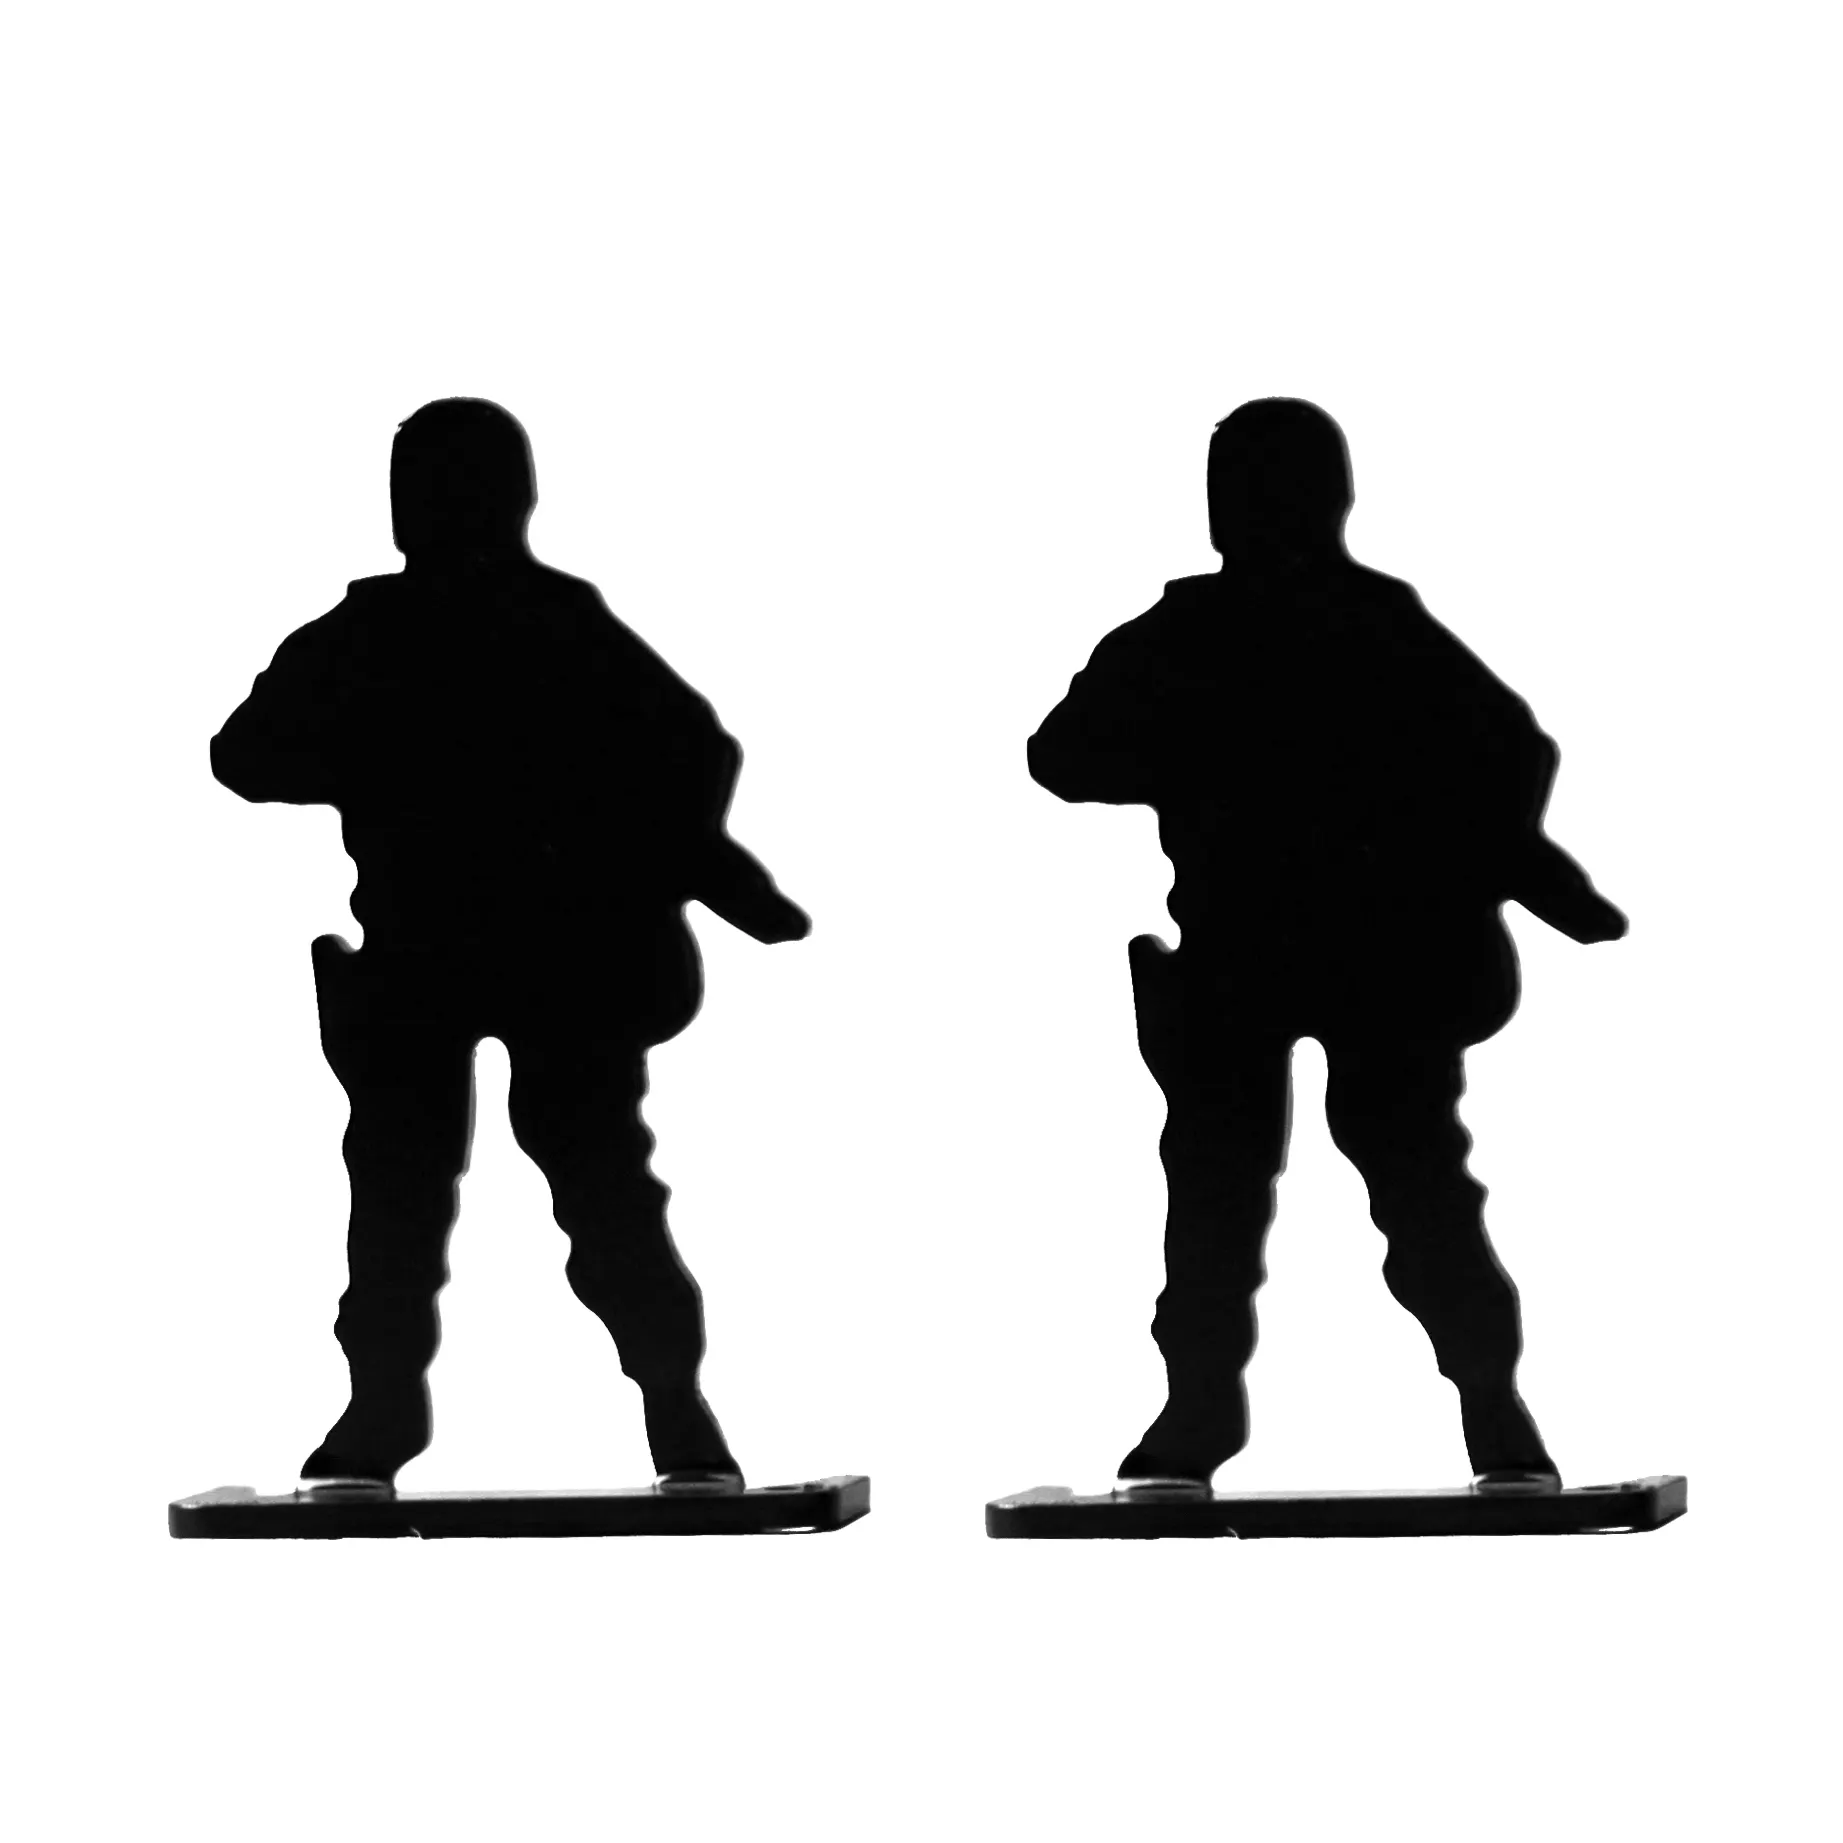 metal 9mm soldiers silhouette shoot target hunting target